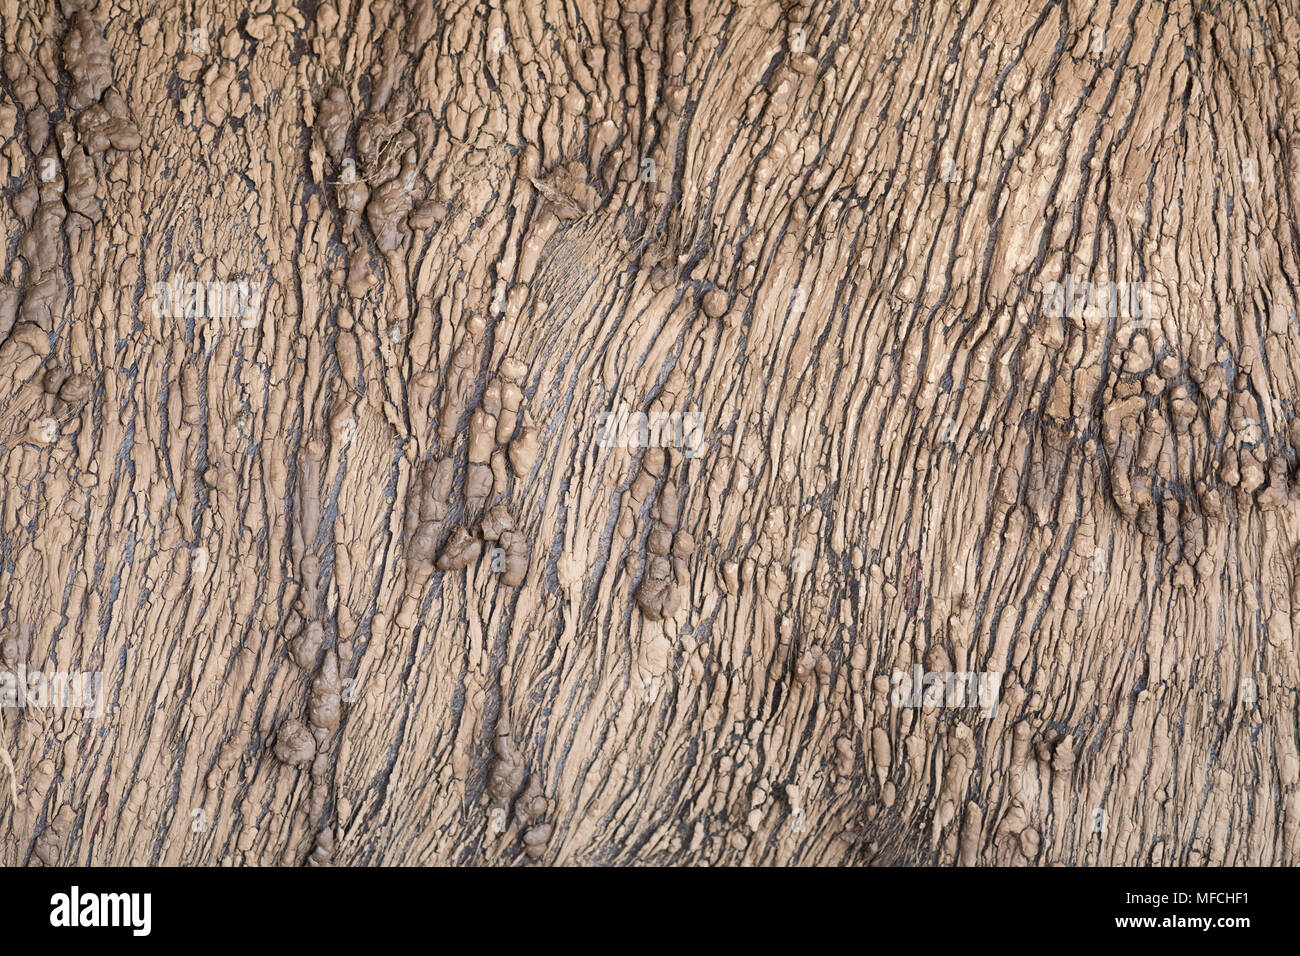 La texture de la peau de buffle d'Asie à faible distance. Banque D'Images